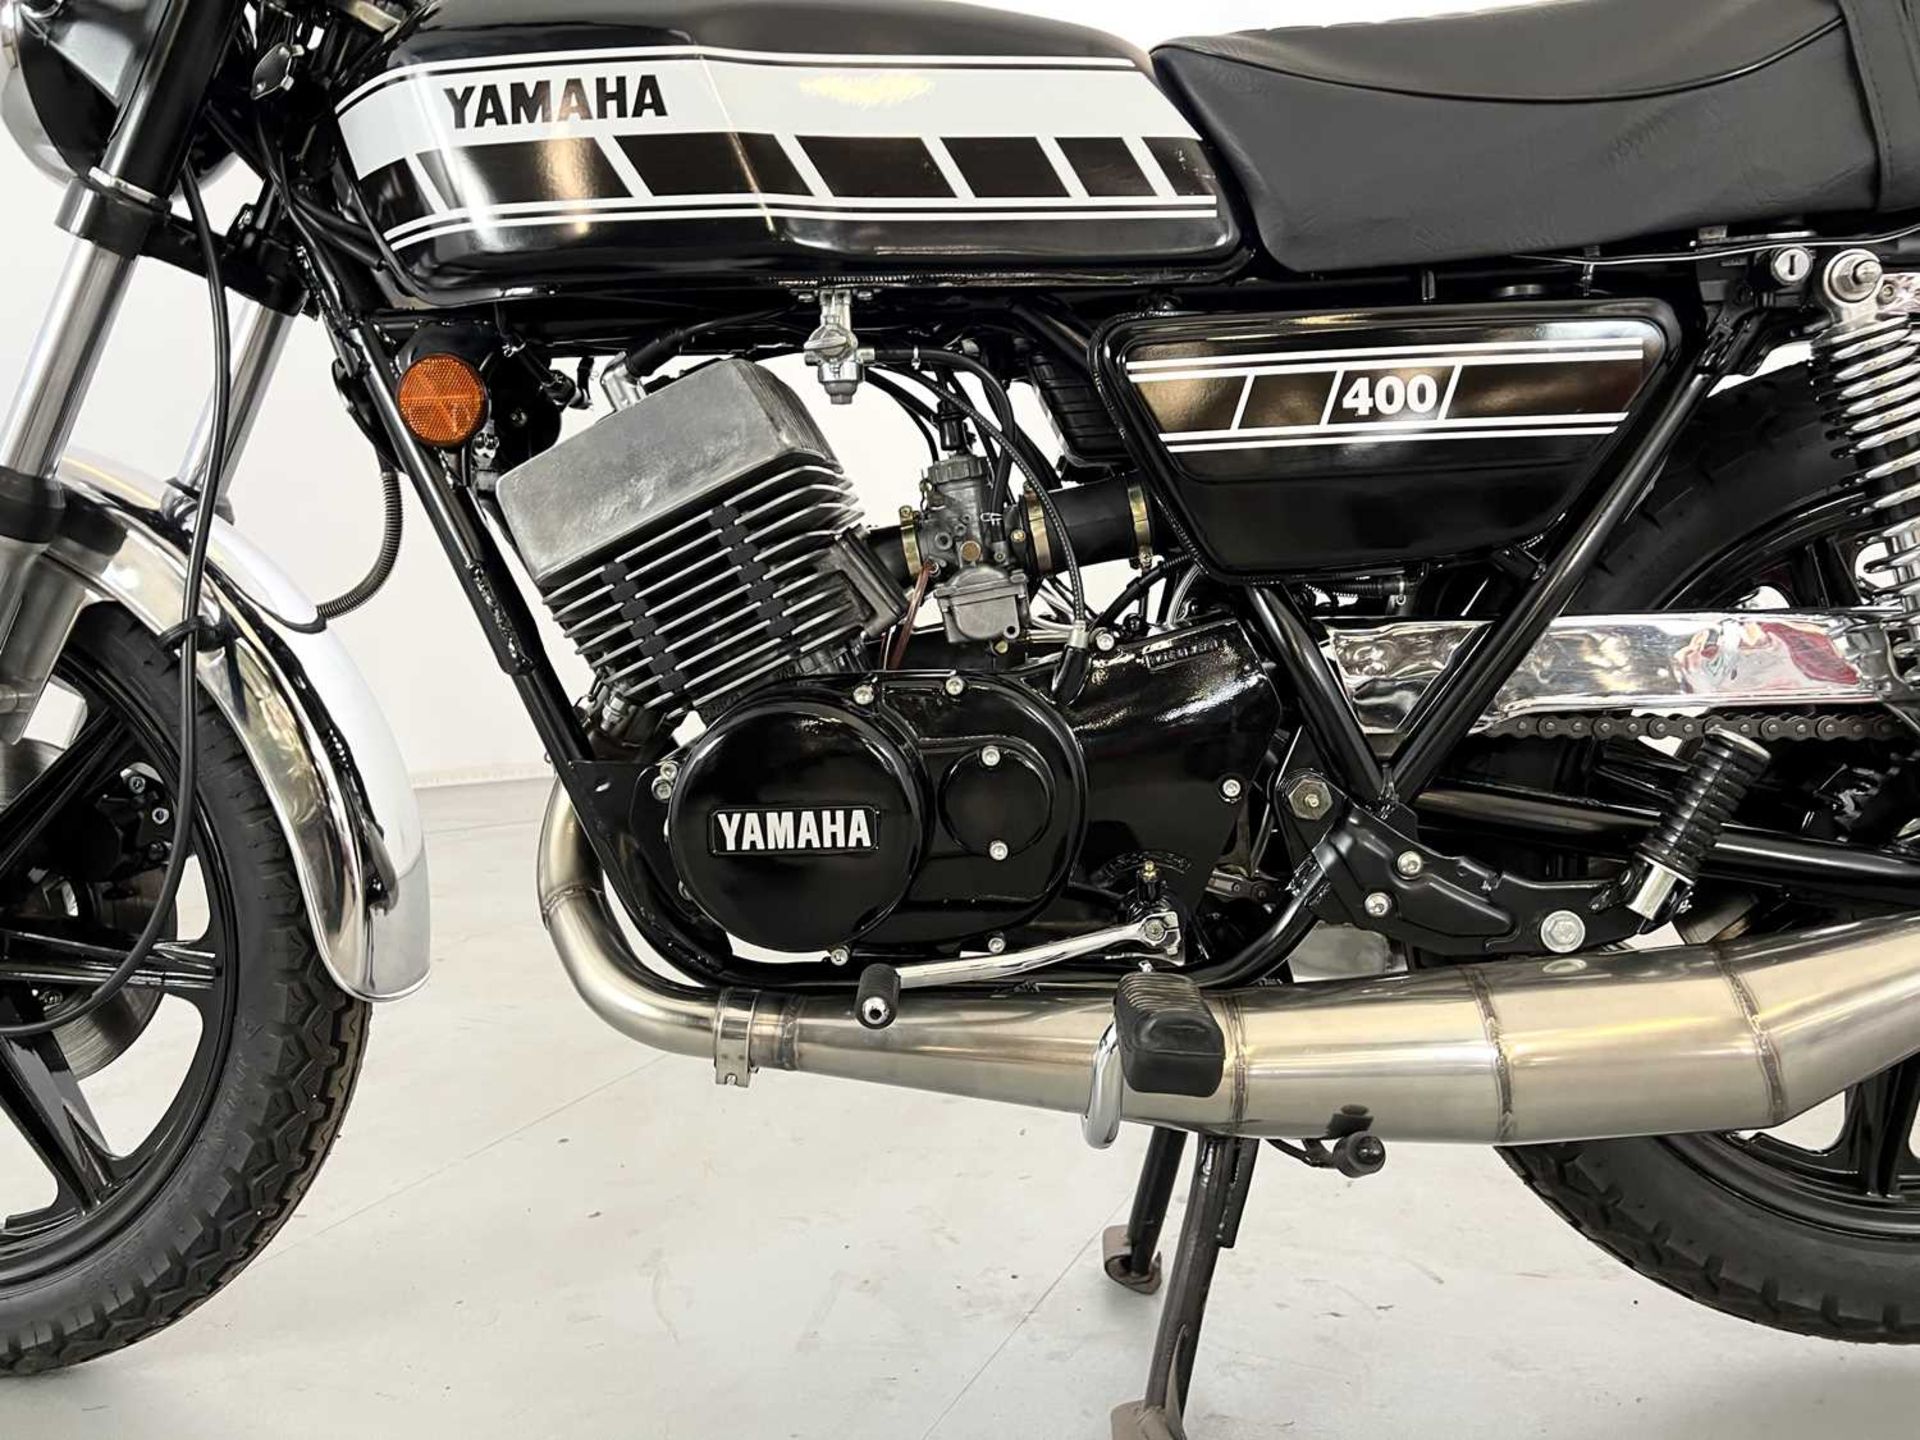 1977 Yamaha RD400 - Image 11 of 17